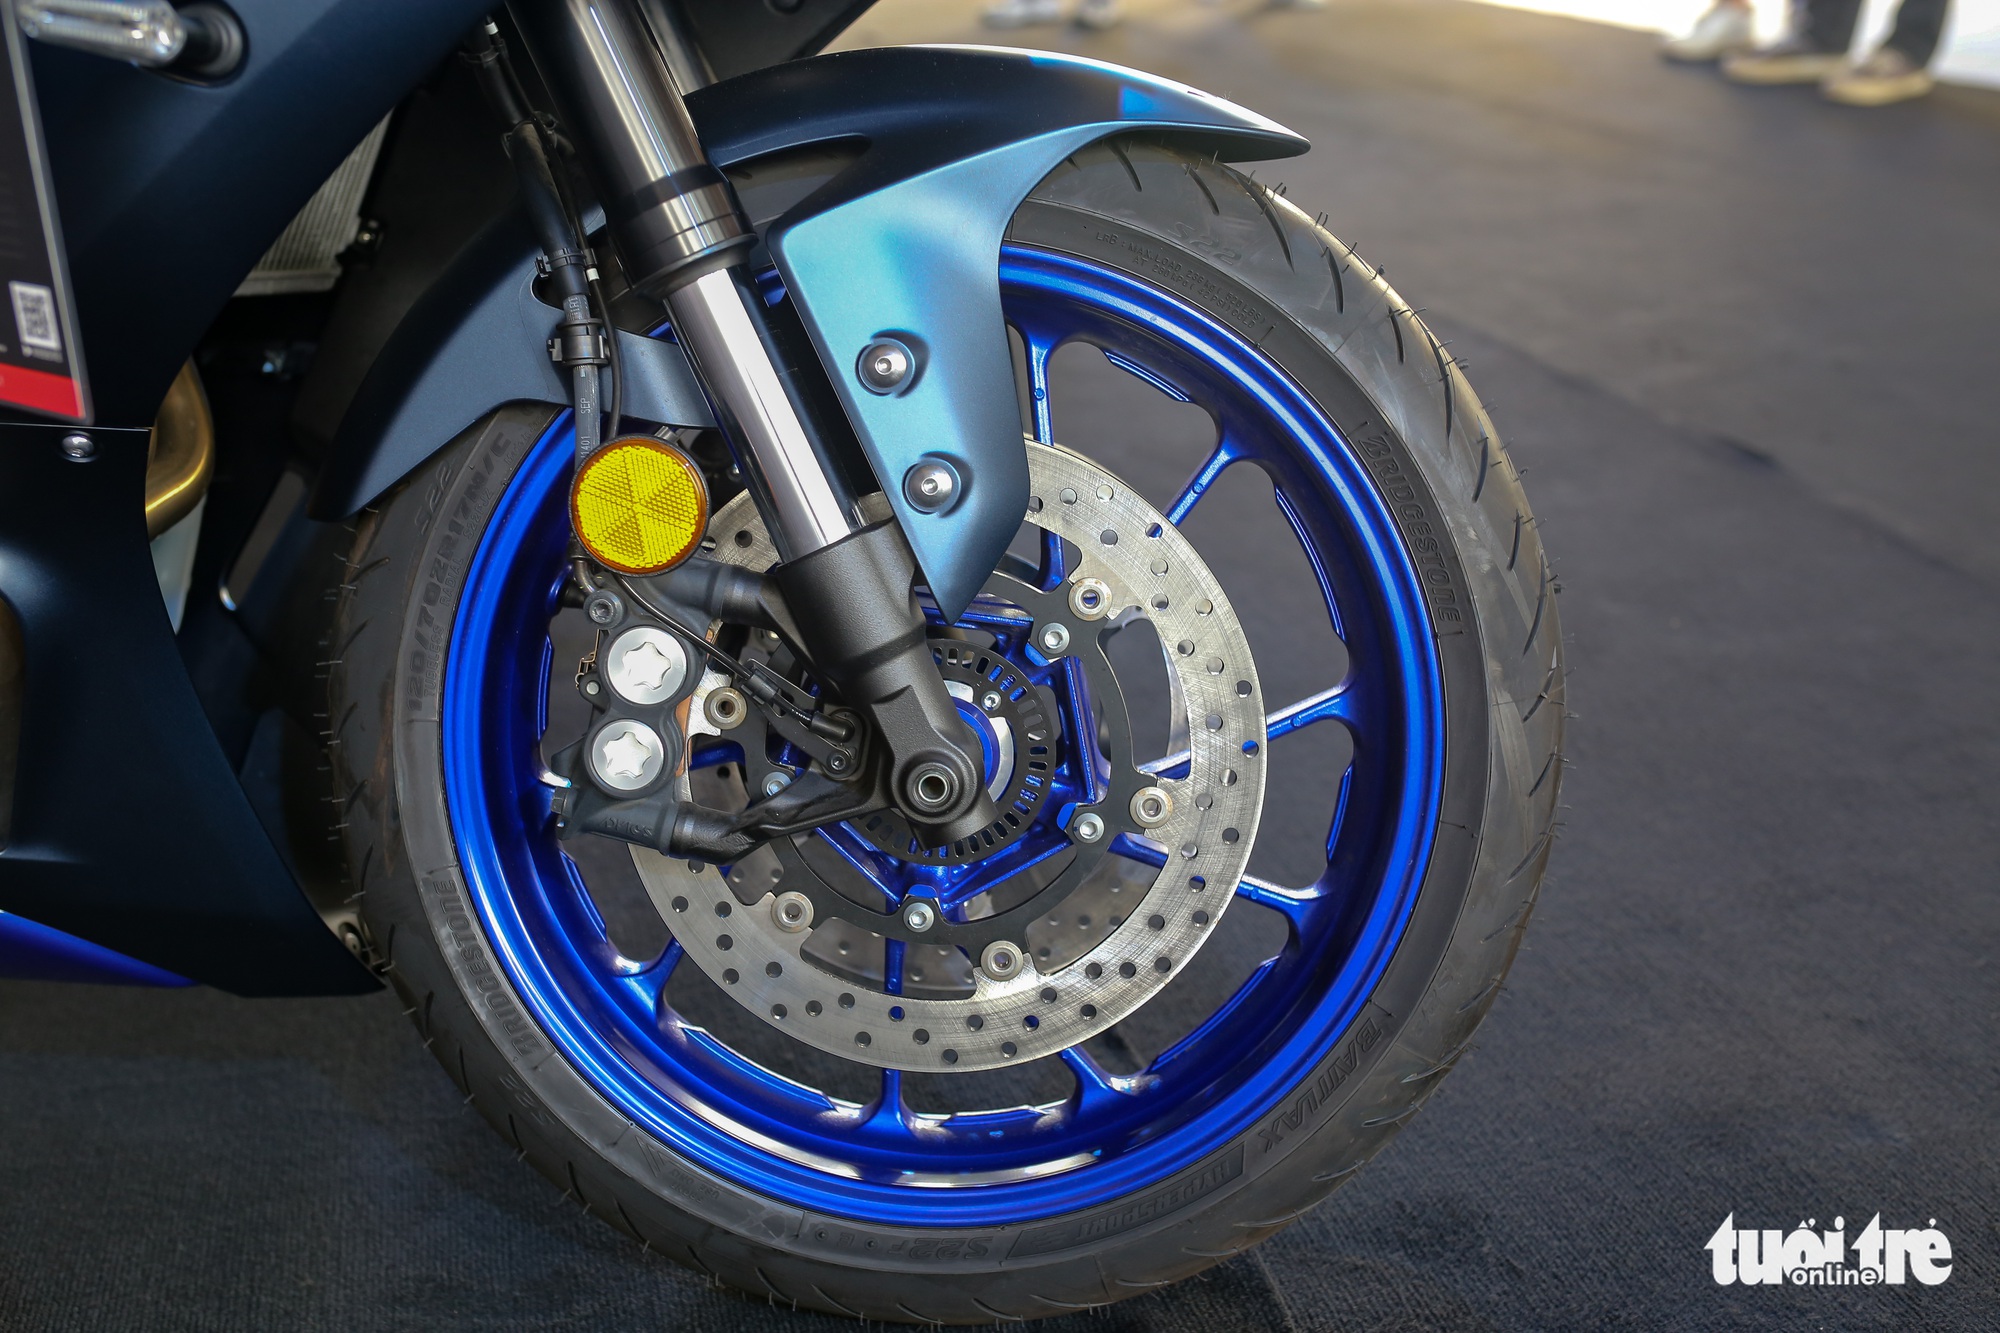 Yamaha YZF-R7 - Sportbike tầm trung giá 269 triệu đồng, thay thế 'huyền thoại' R6 - Ảnh 6.